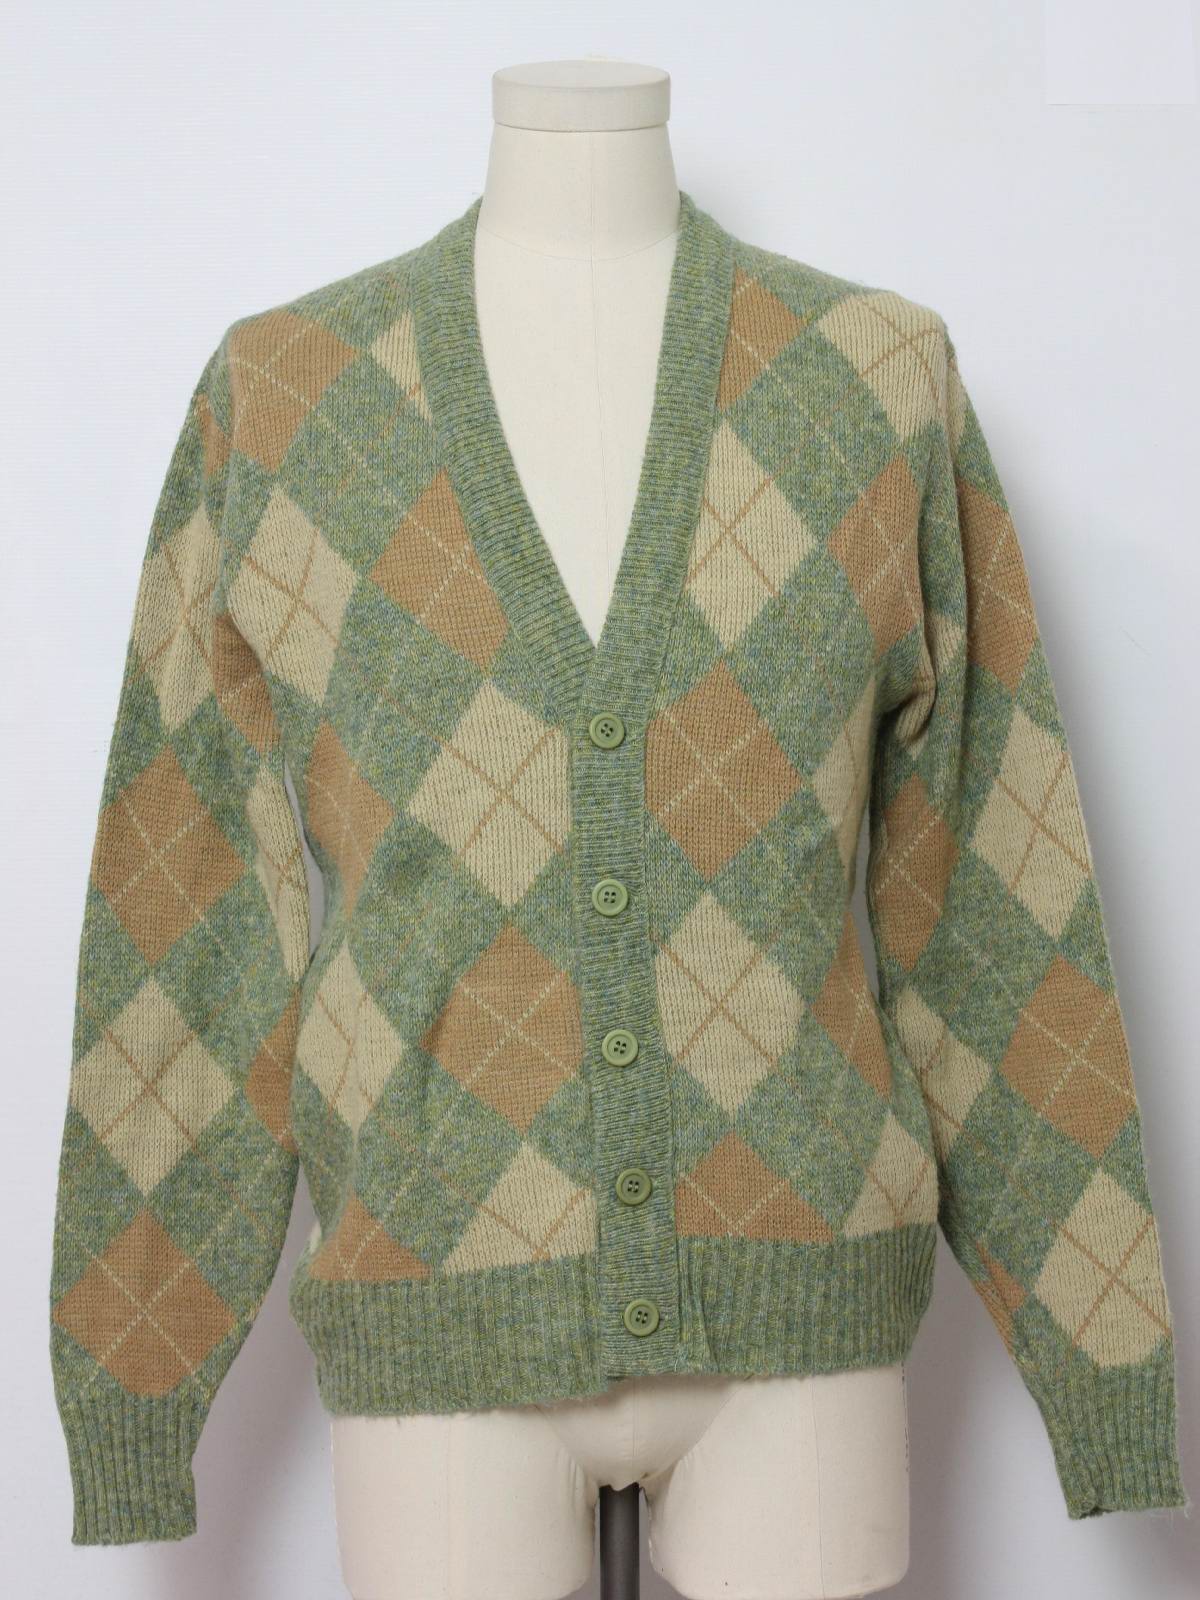 Retro 80's Caridgan Sweater: 80s -Robert Bruce- Mens sage green, tan ...